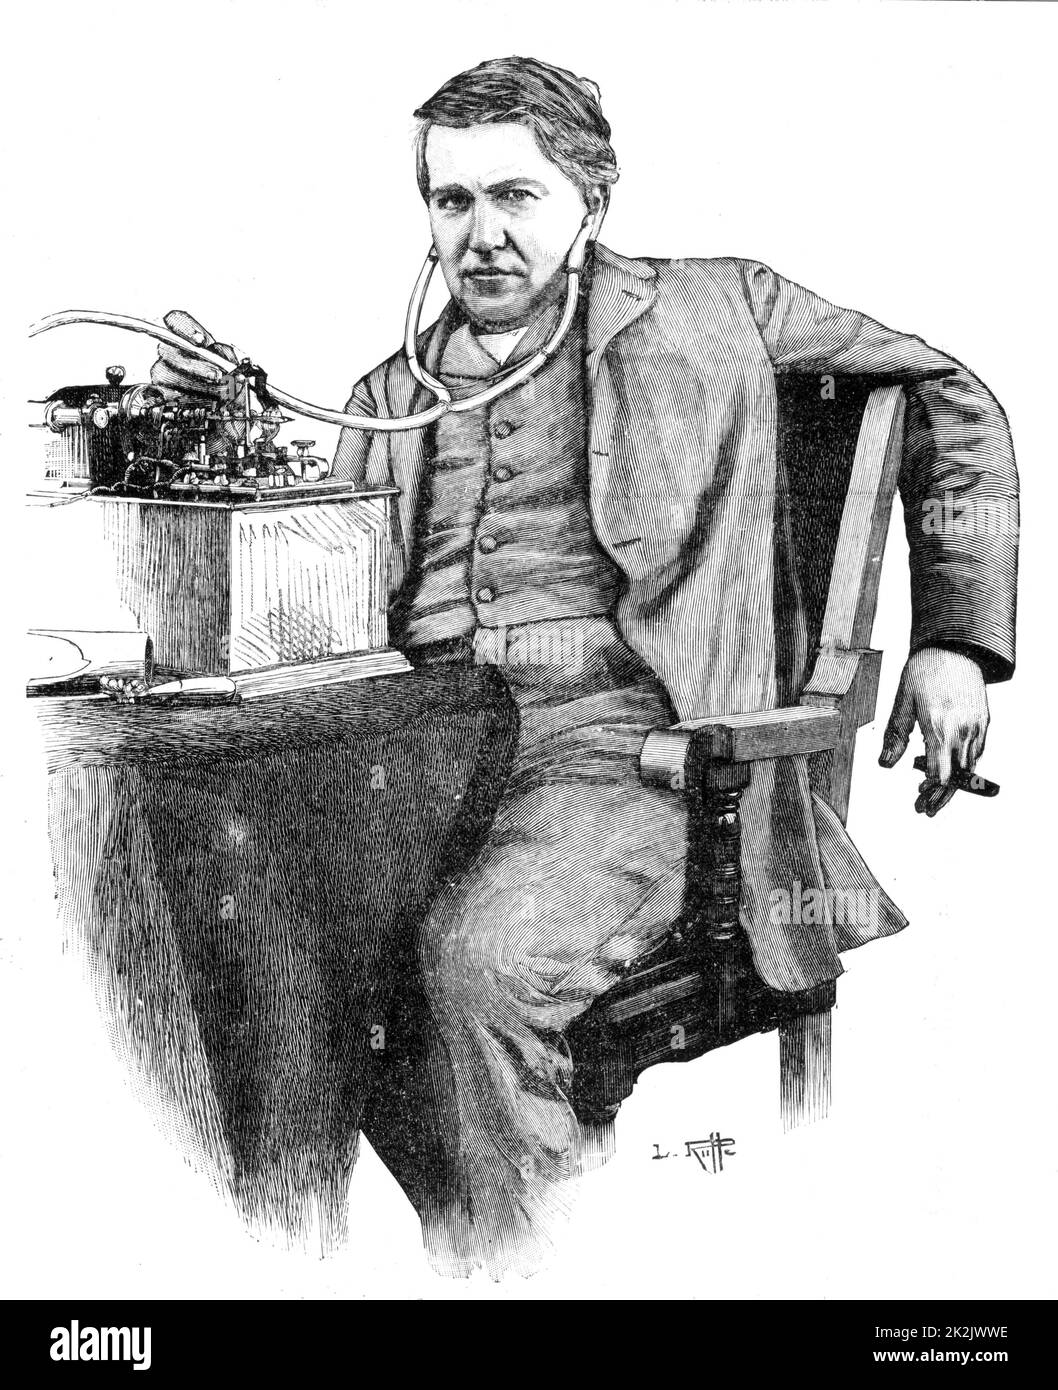 Thomas Alva Edison (1847-1931) amerikanischer Erfinder, der Wiedergabe einer Aufnahme auf ein elektrisches Modell seines Phonographen durch eine nasse Batterie versorgt. Gravur Stockfoto